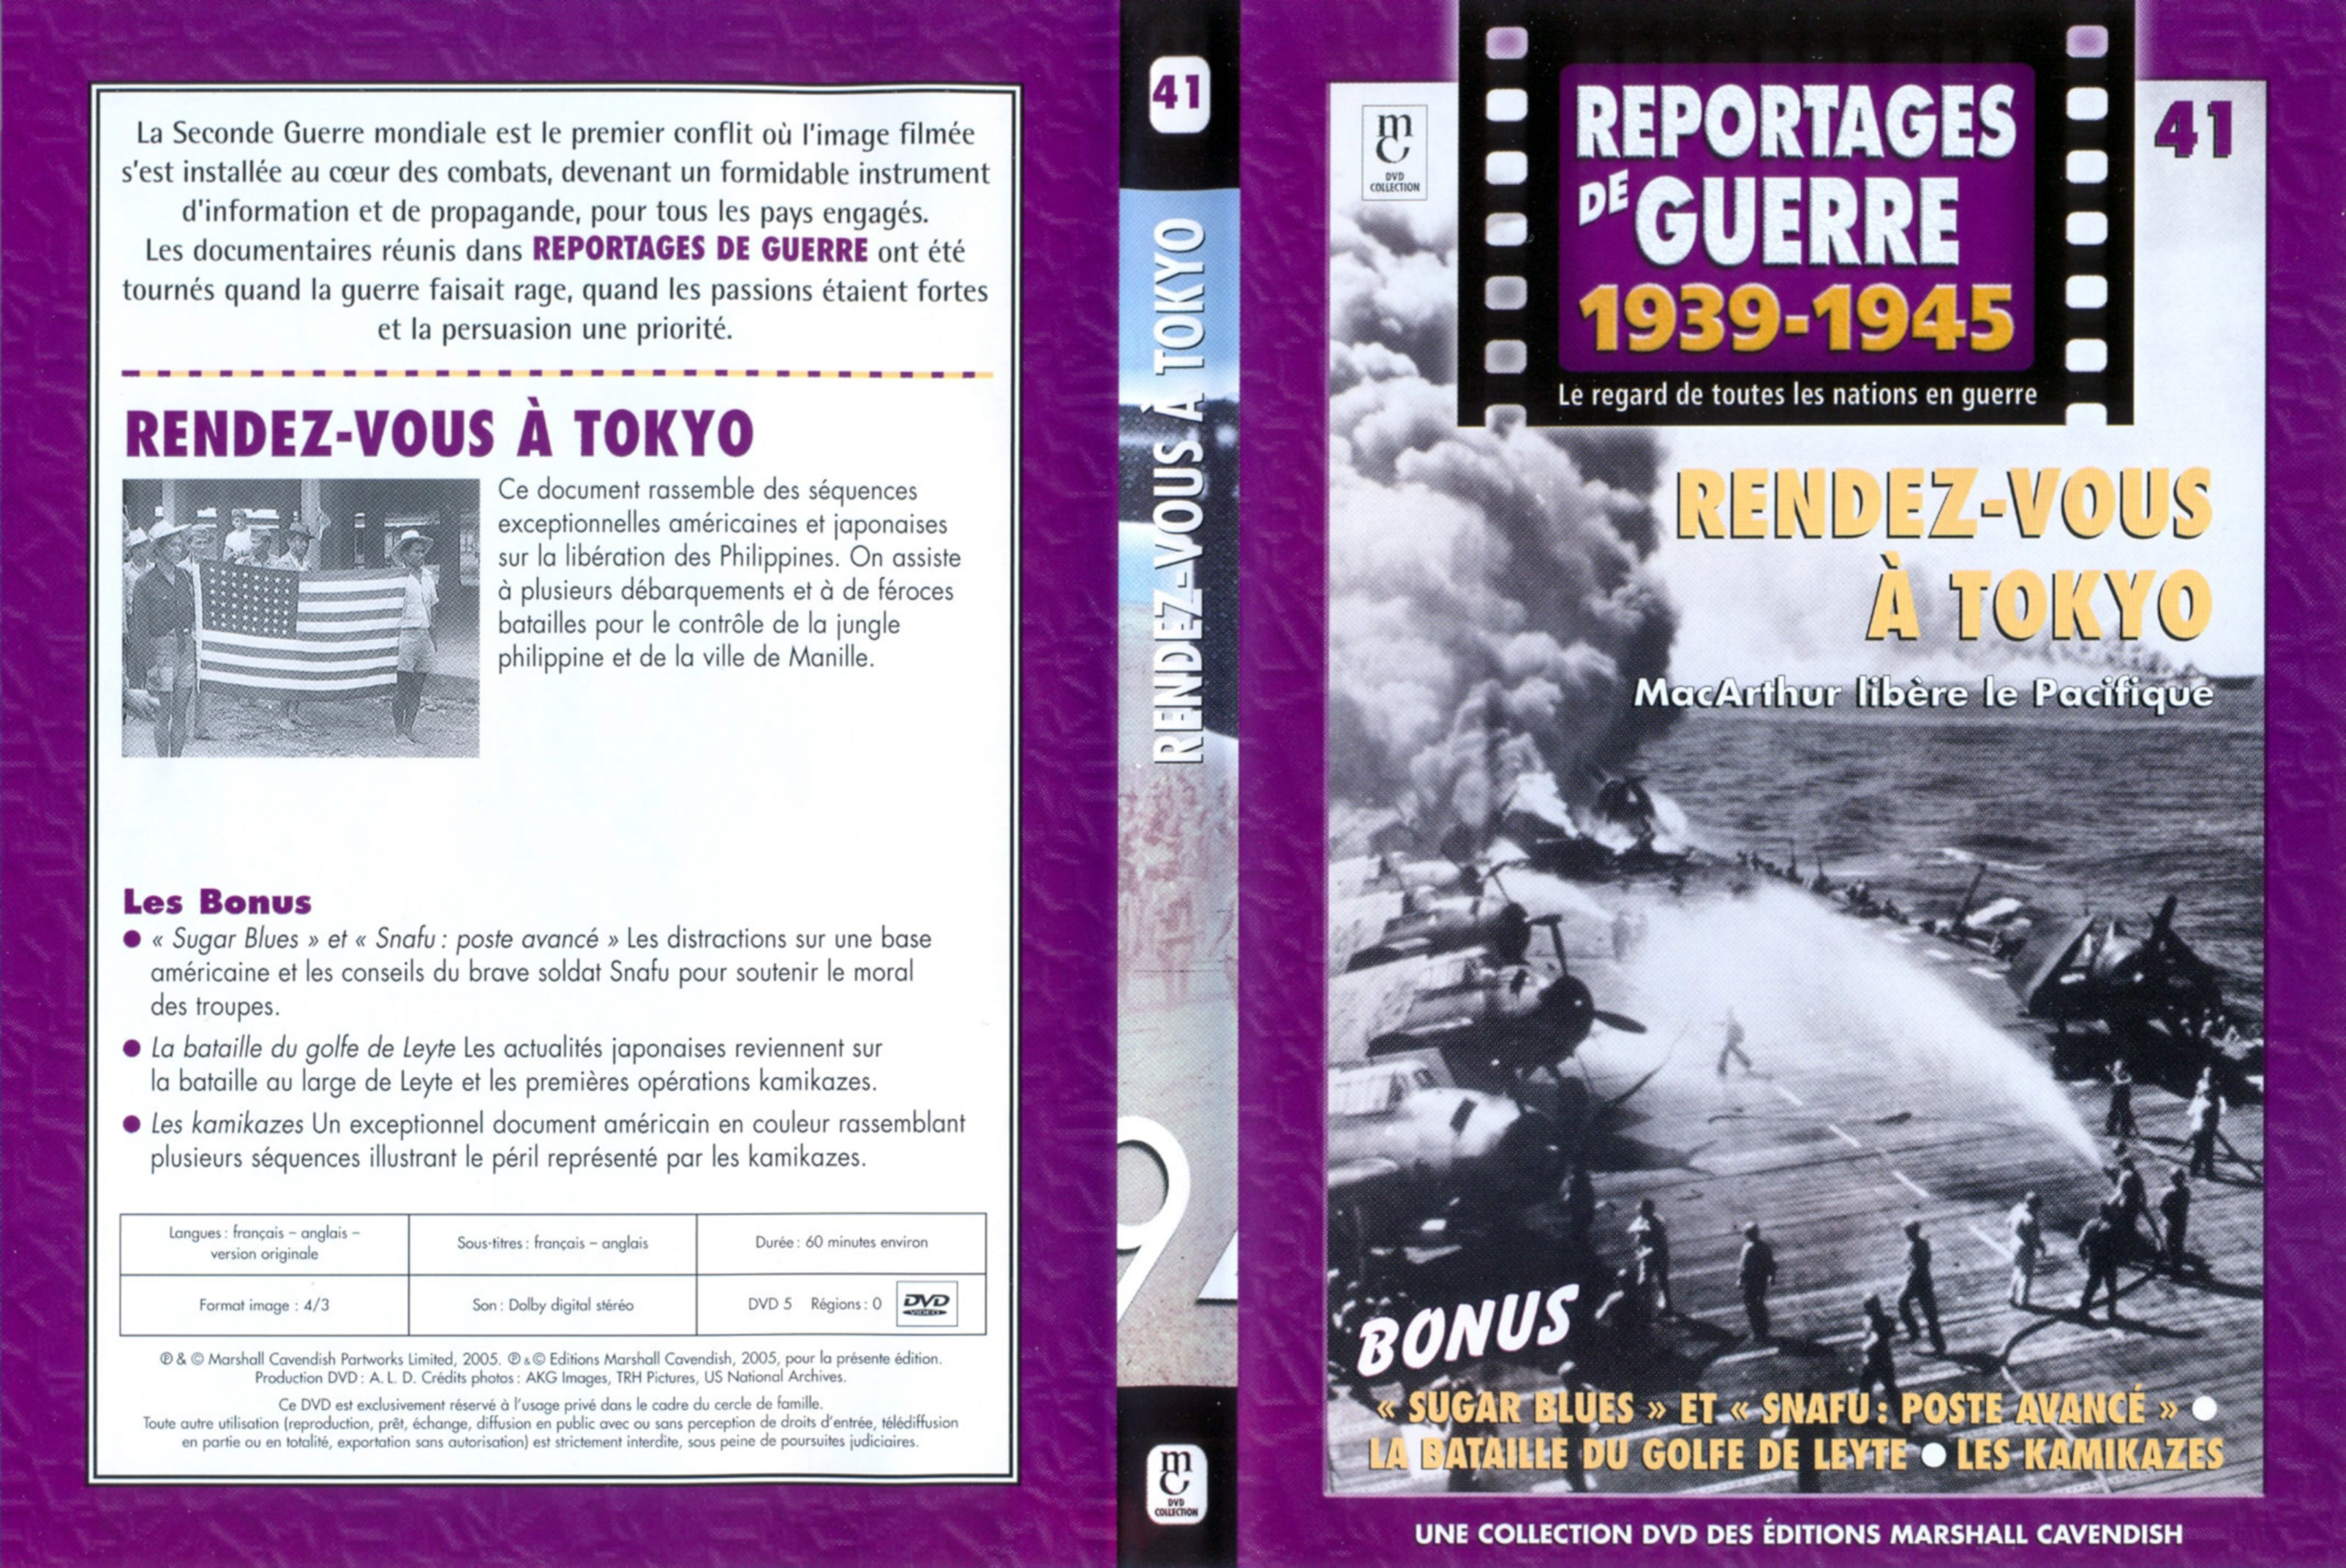 Jaquette DVD Reportages de guerre vol 41